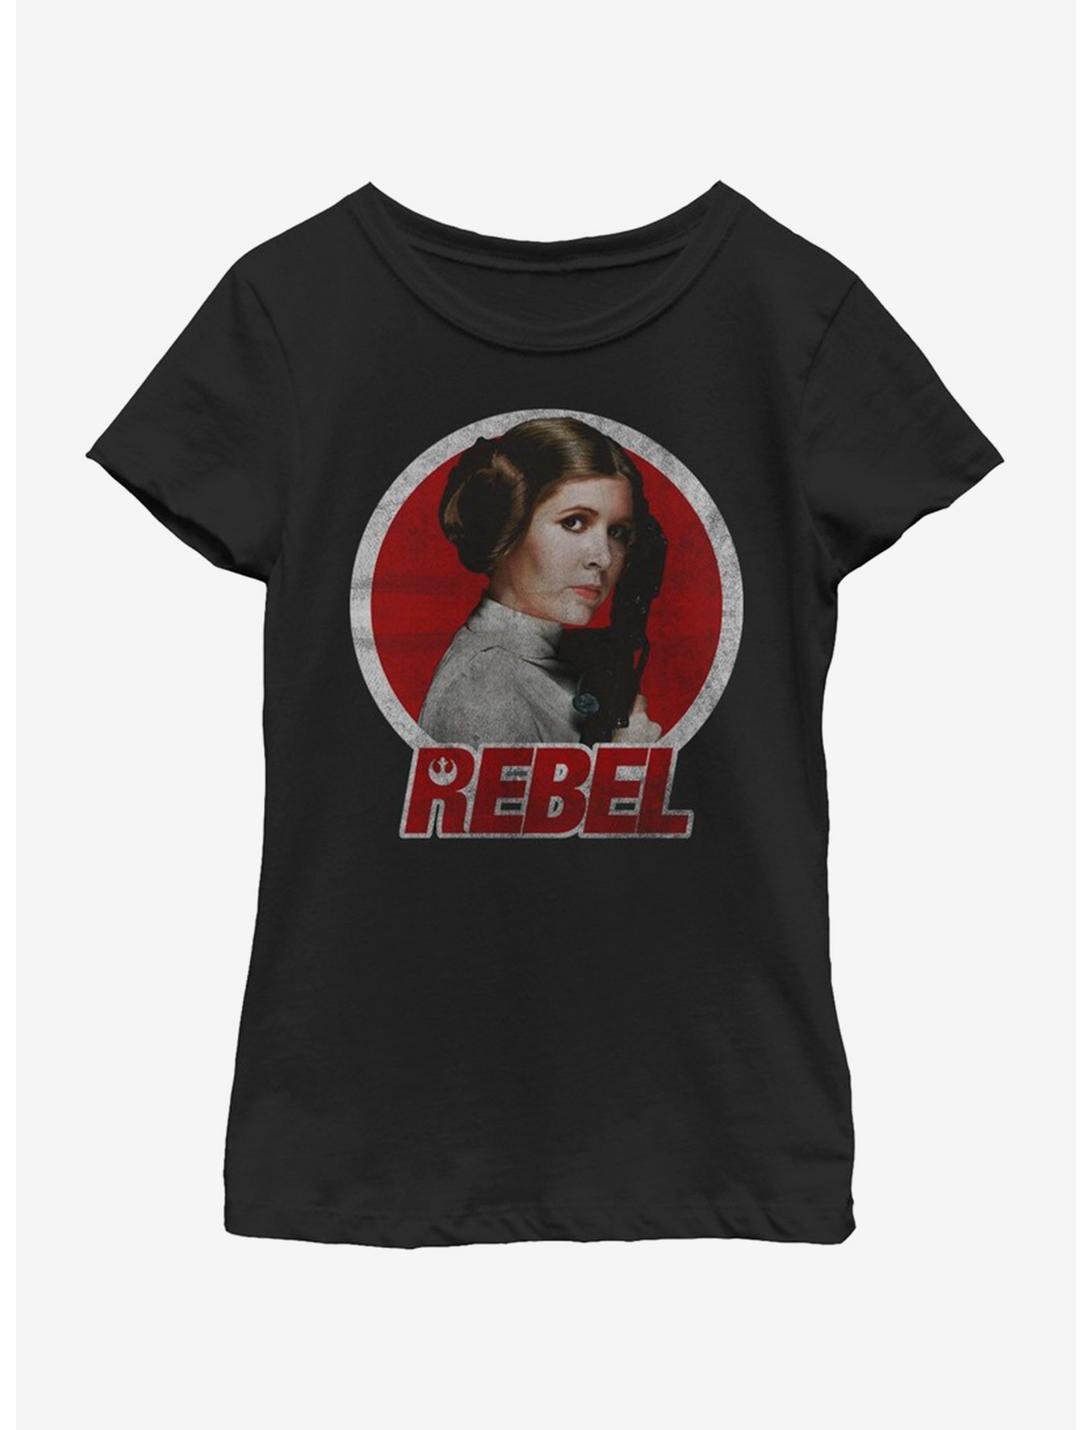 Star Wars Leia Rebel Circle Youth Girls T-Shirt, BLACK, hi-res